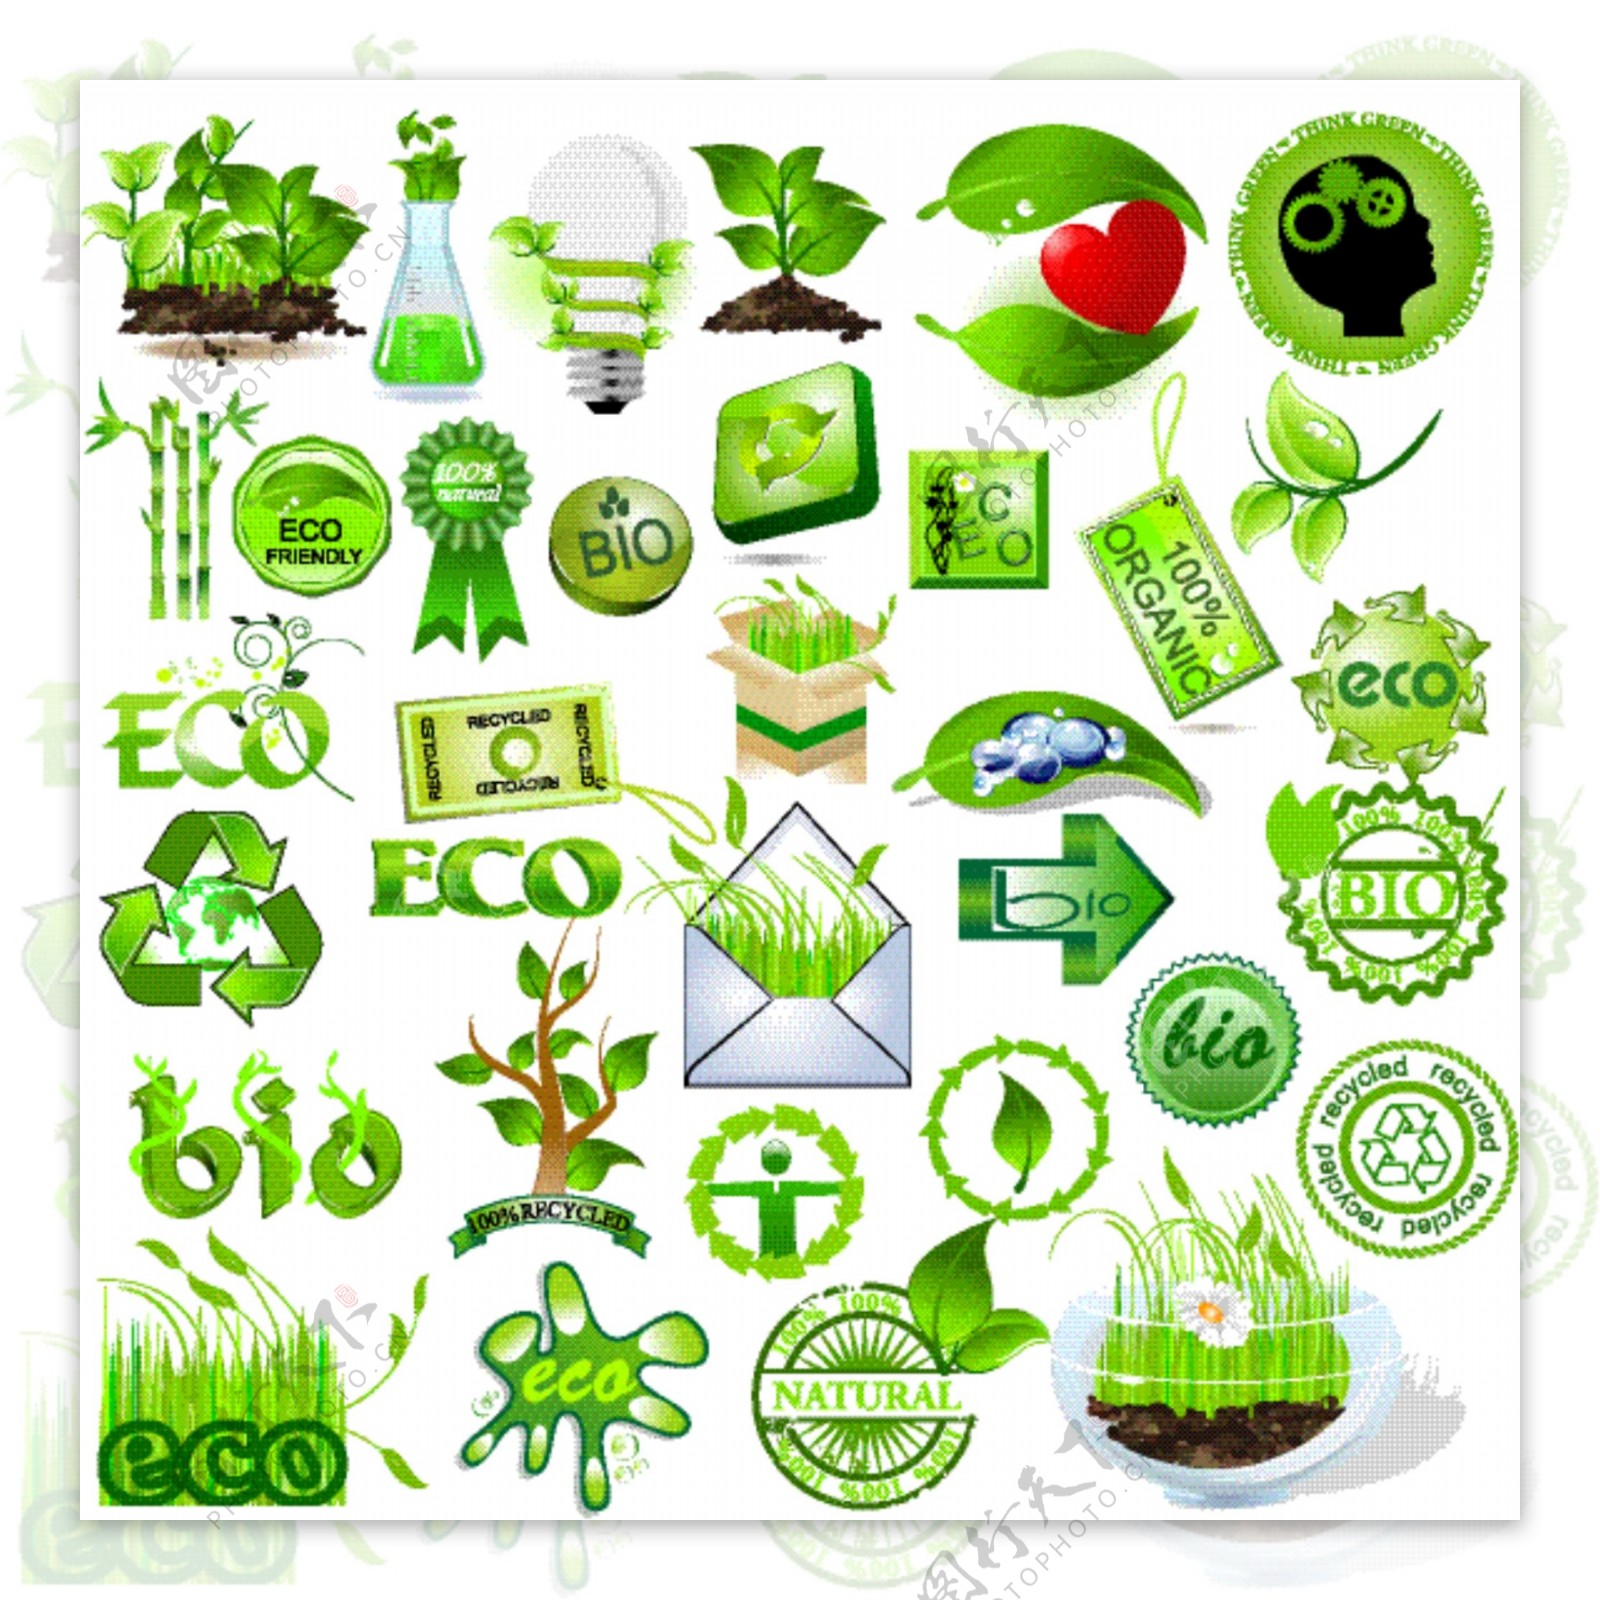 绿色环保可回收的绿色元素矢量素材